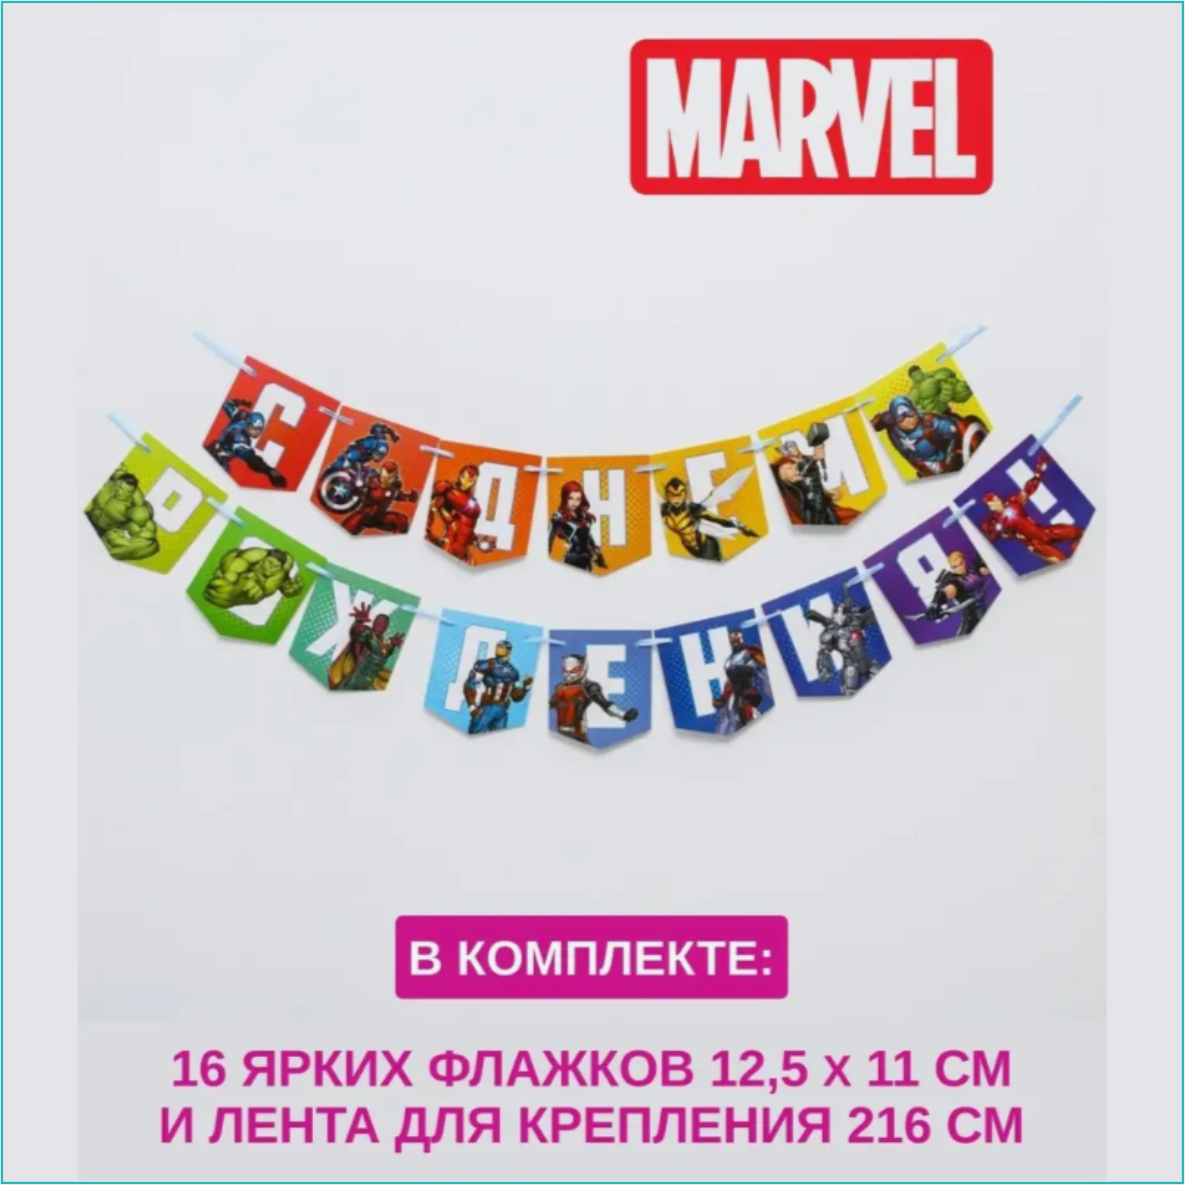 Гирлянда из флажков "Мстители" Marvel (2 метра)